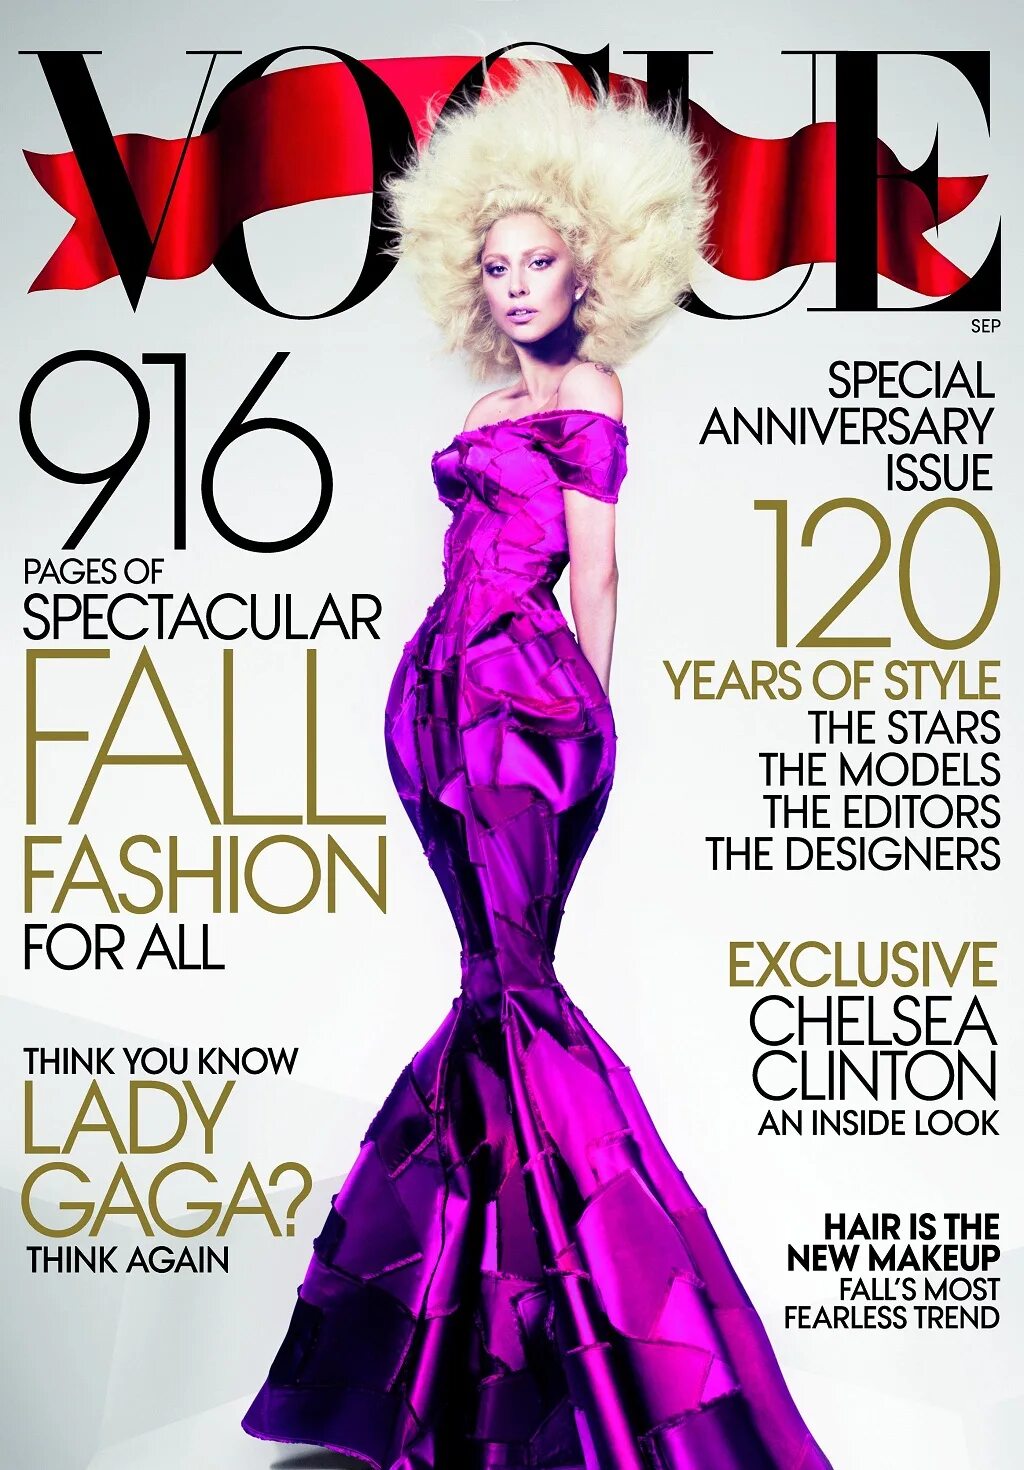 Обложки журналов моды. Леди Гага Vogue. Леди Гага для Вог. Леди Гага обложка Вог. Леди Гага журнал Vogue.